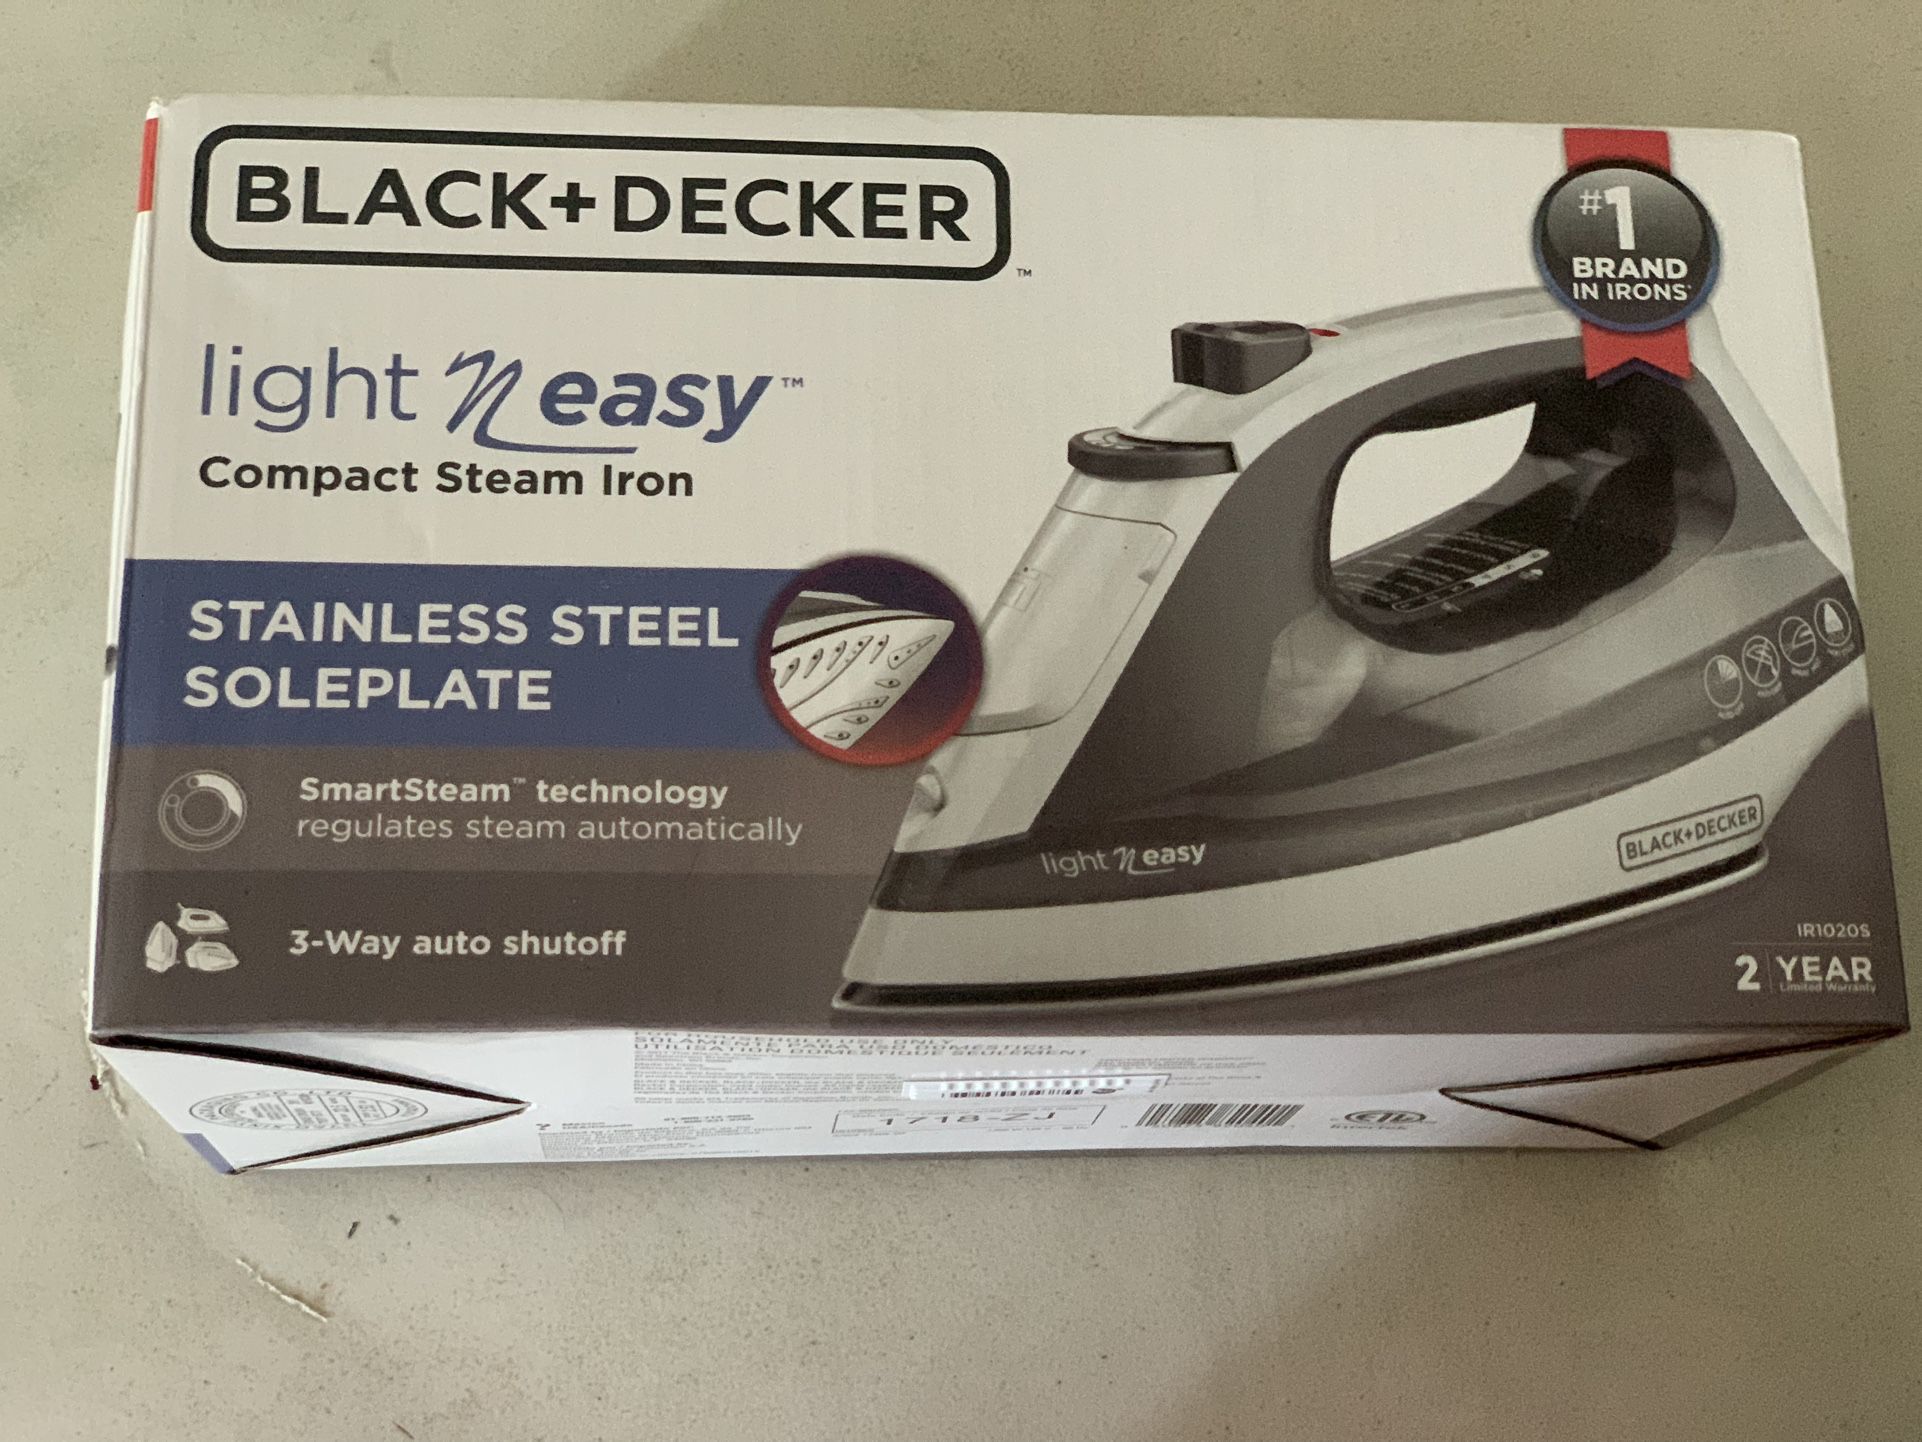 Black & Decker, Other, Black Decker Brand New Iron